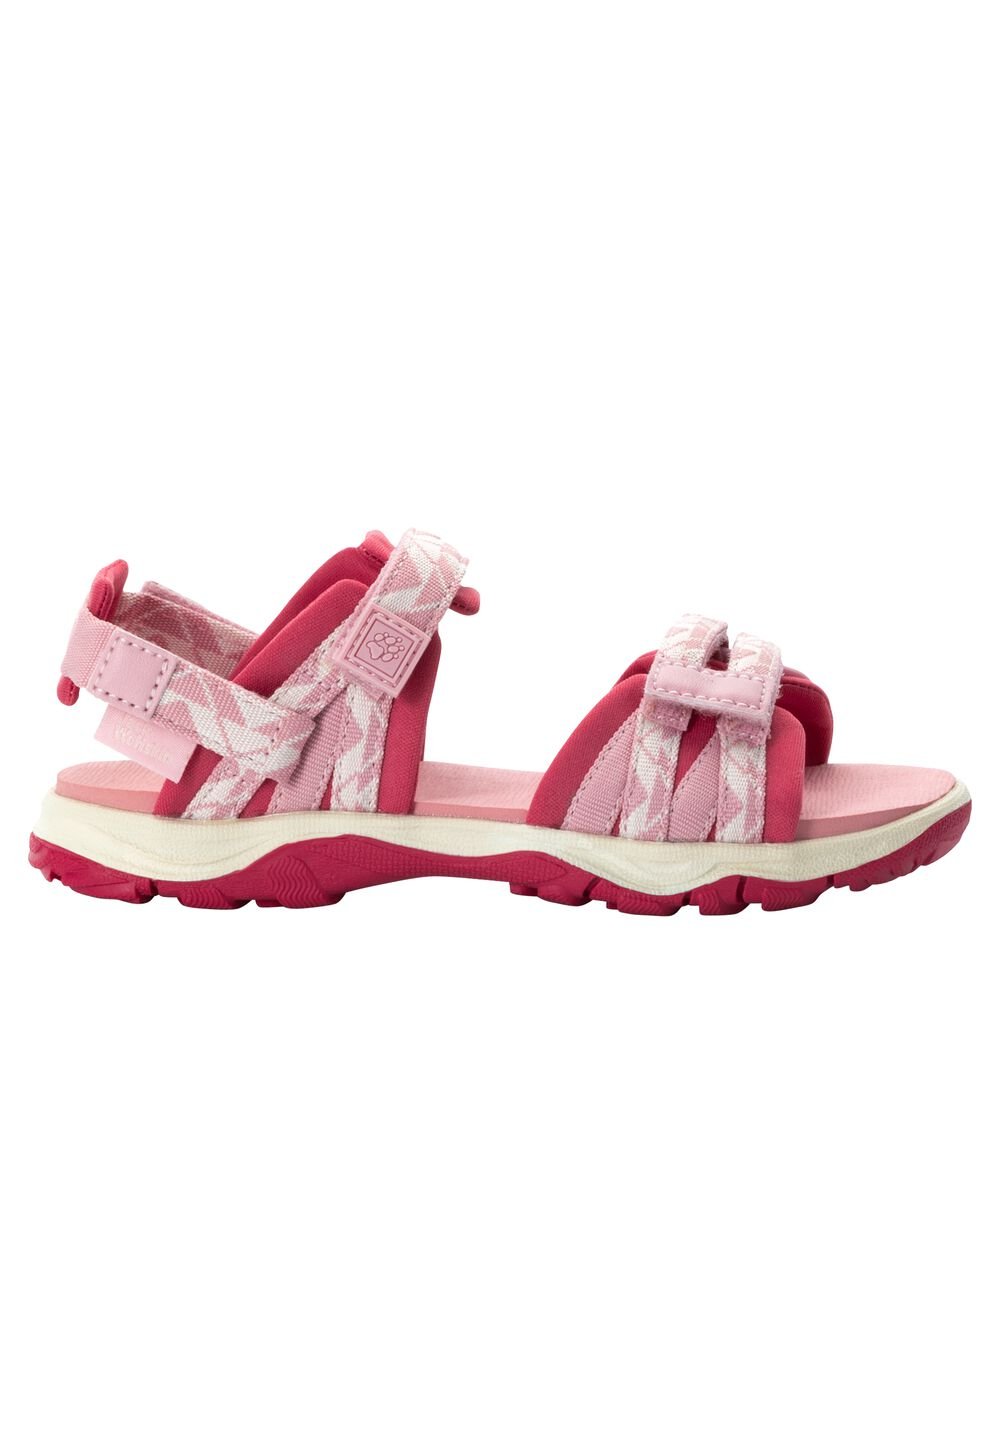 Jack Wolfskin 2 IN 1 Sandal Kids Kinderen sandalen 26 soft pink soft pink